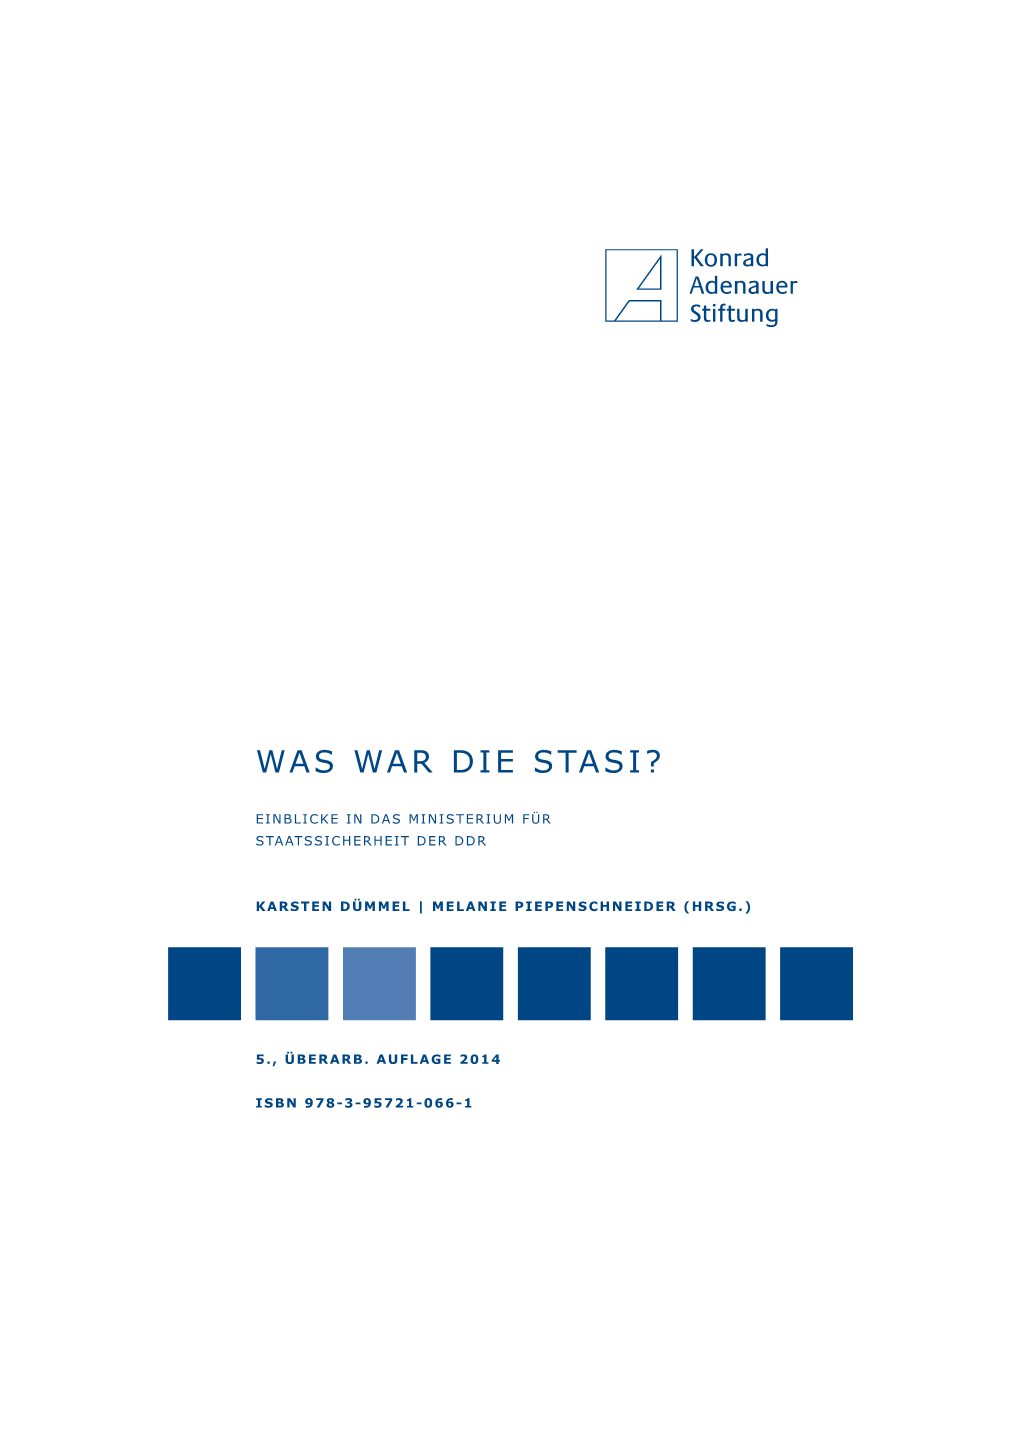 Was War Die Stasi?